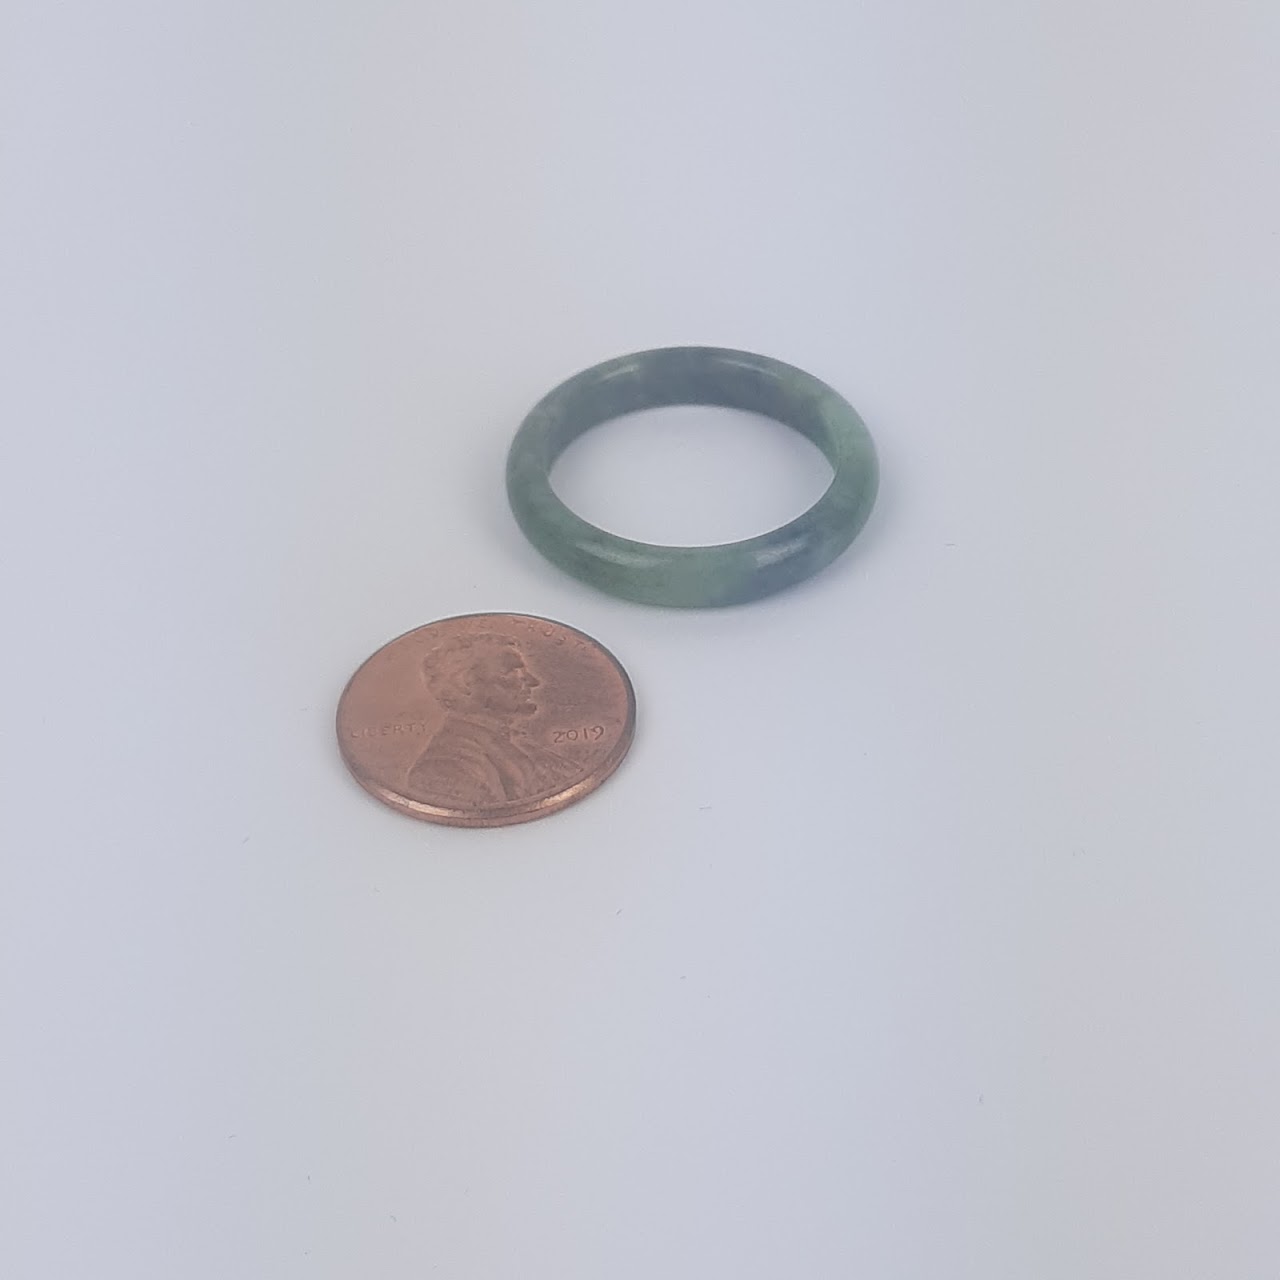 Jade Thin Band Ring